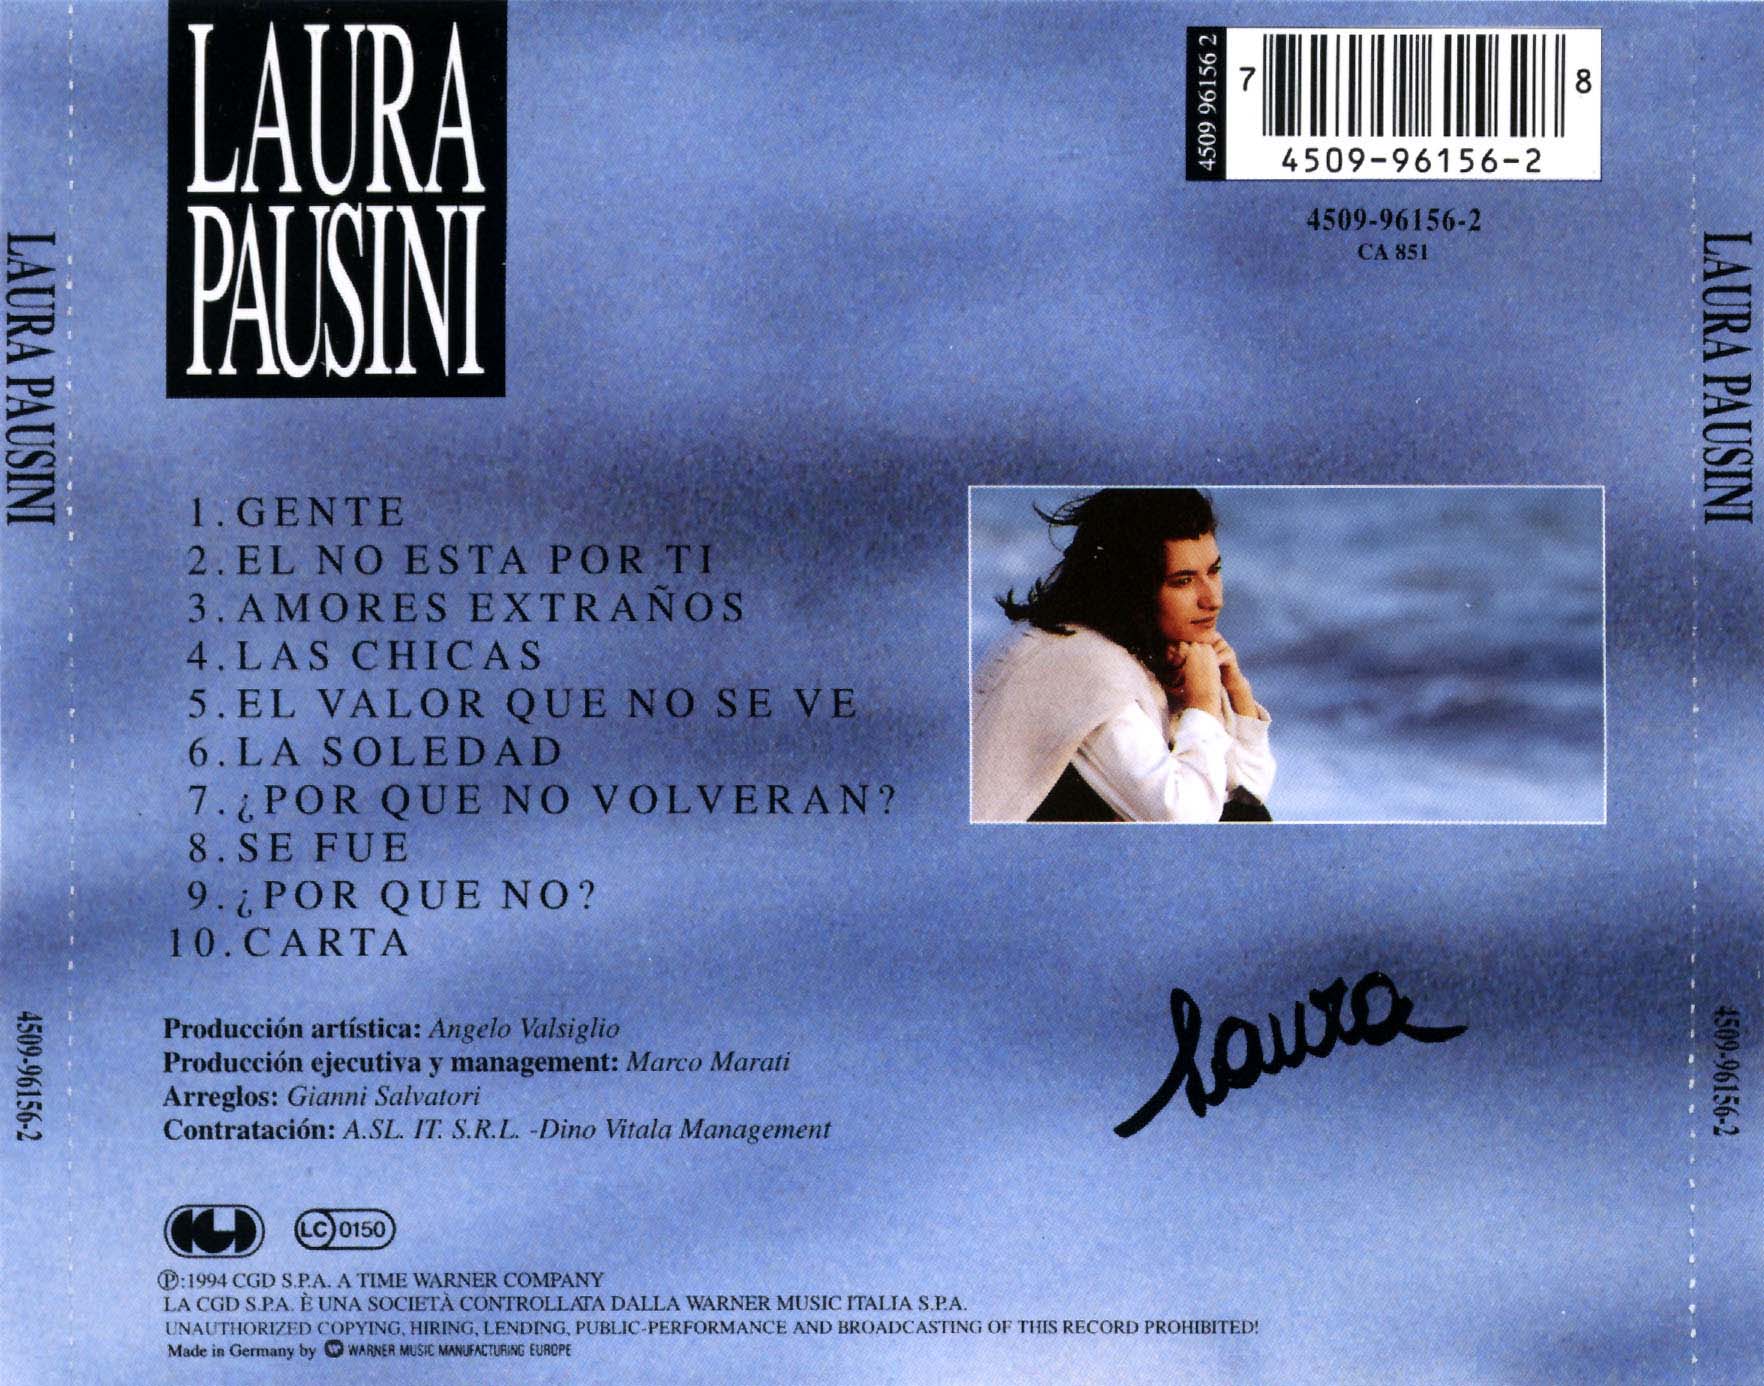 Cartula Trasera de Laura Pausini - Laura Pausini